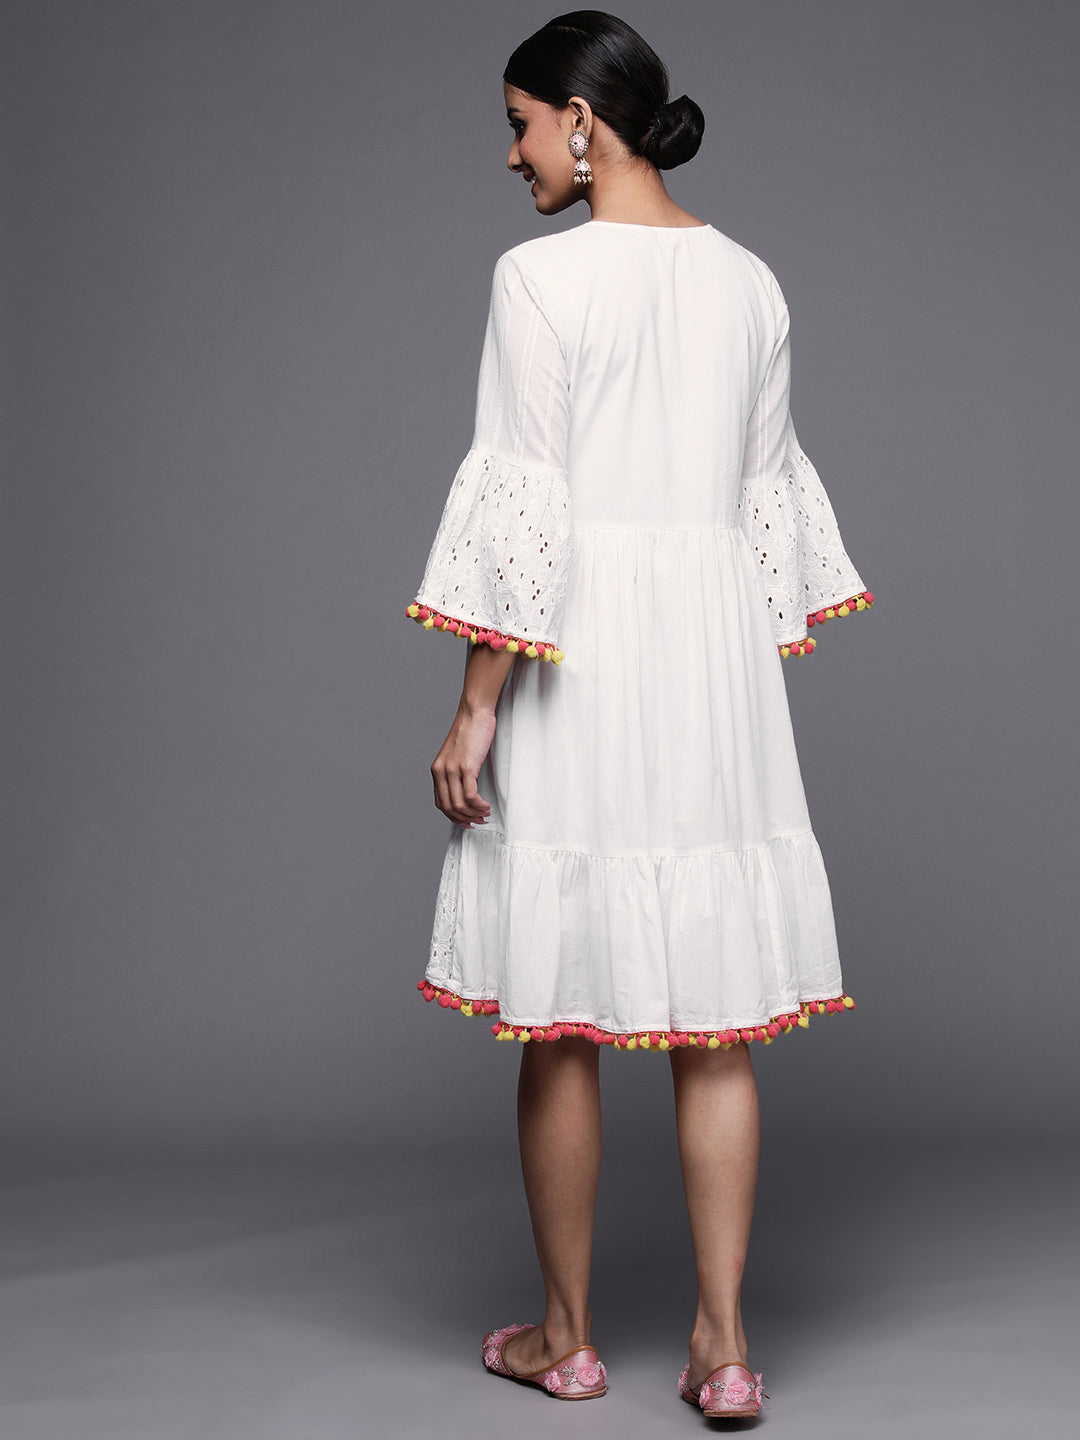 Best White Dresses 2019 | POPSUGAR Fashion